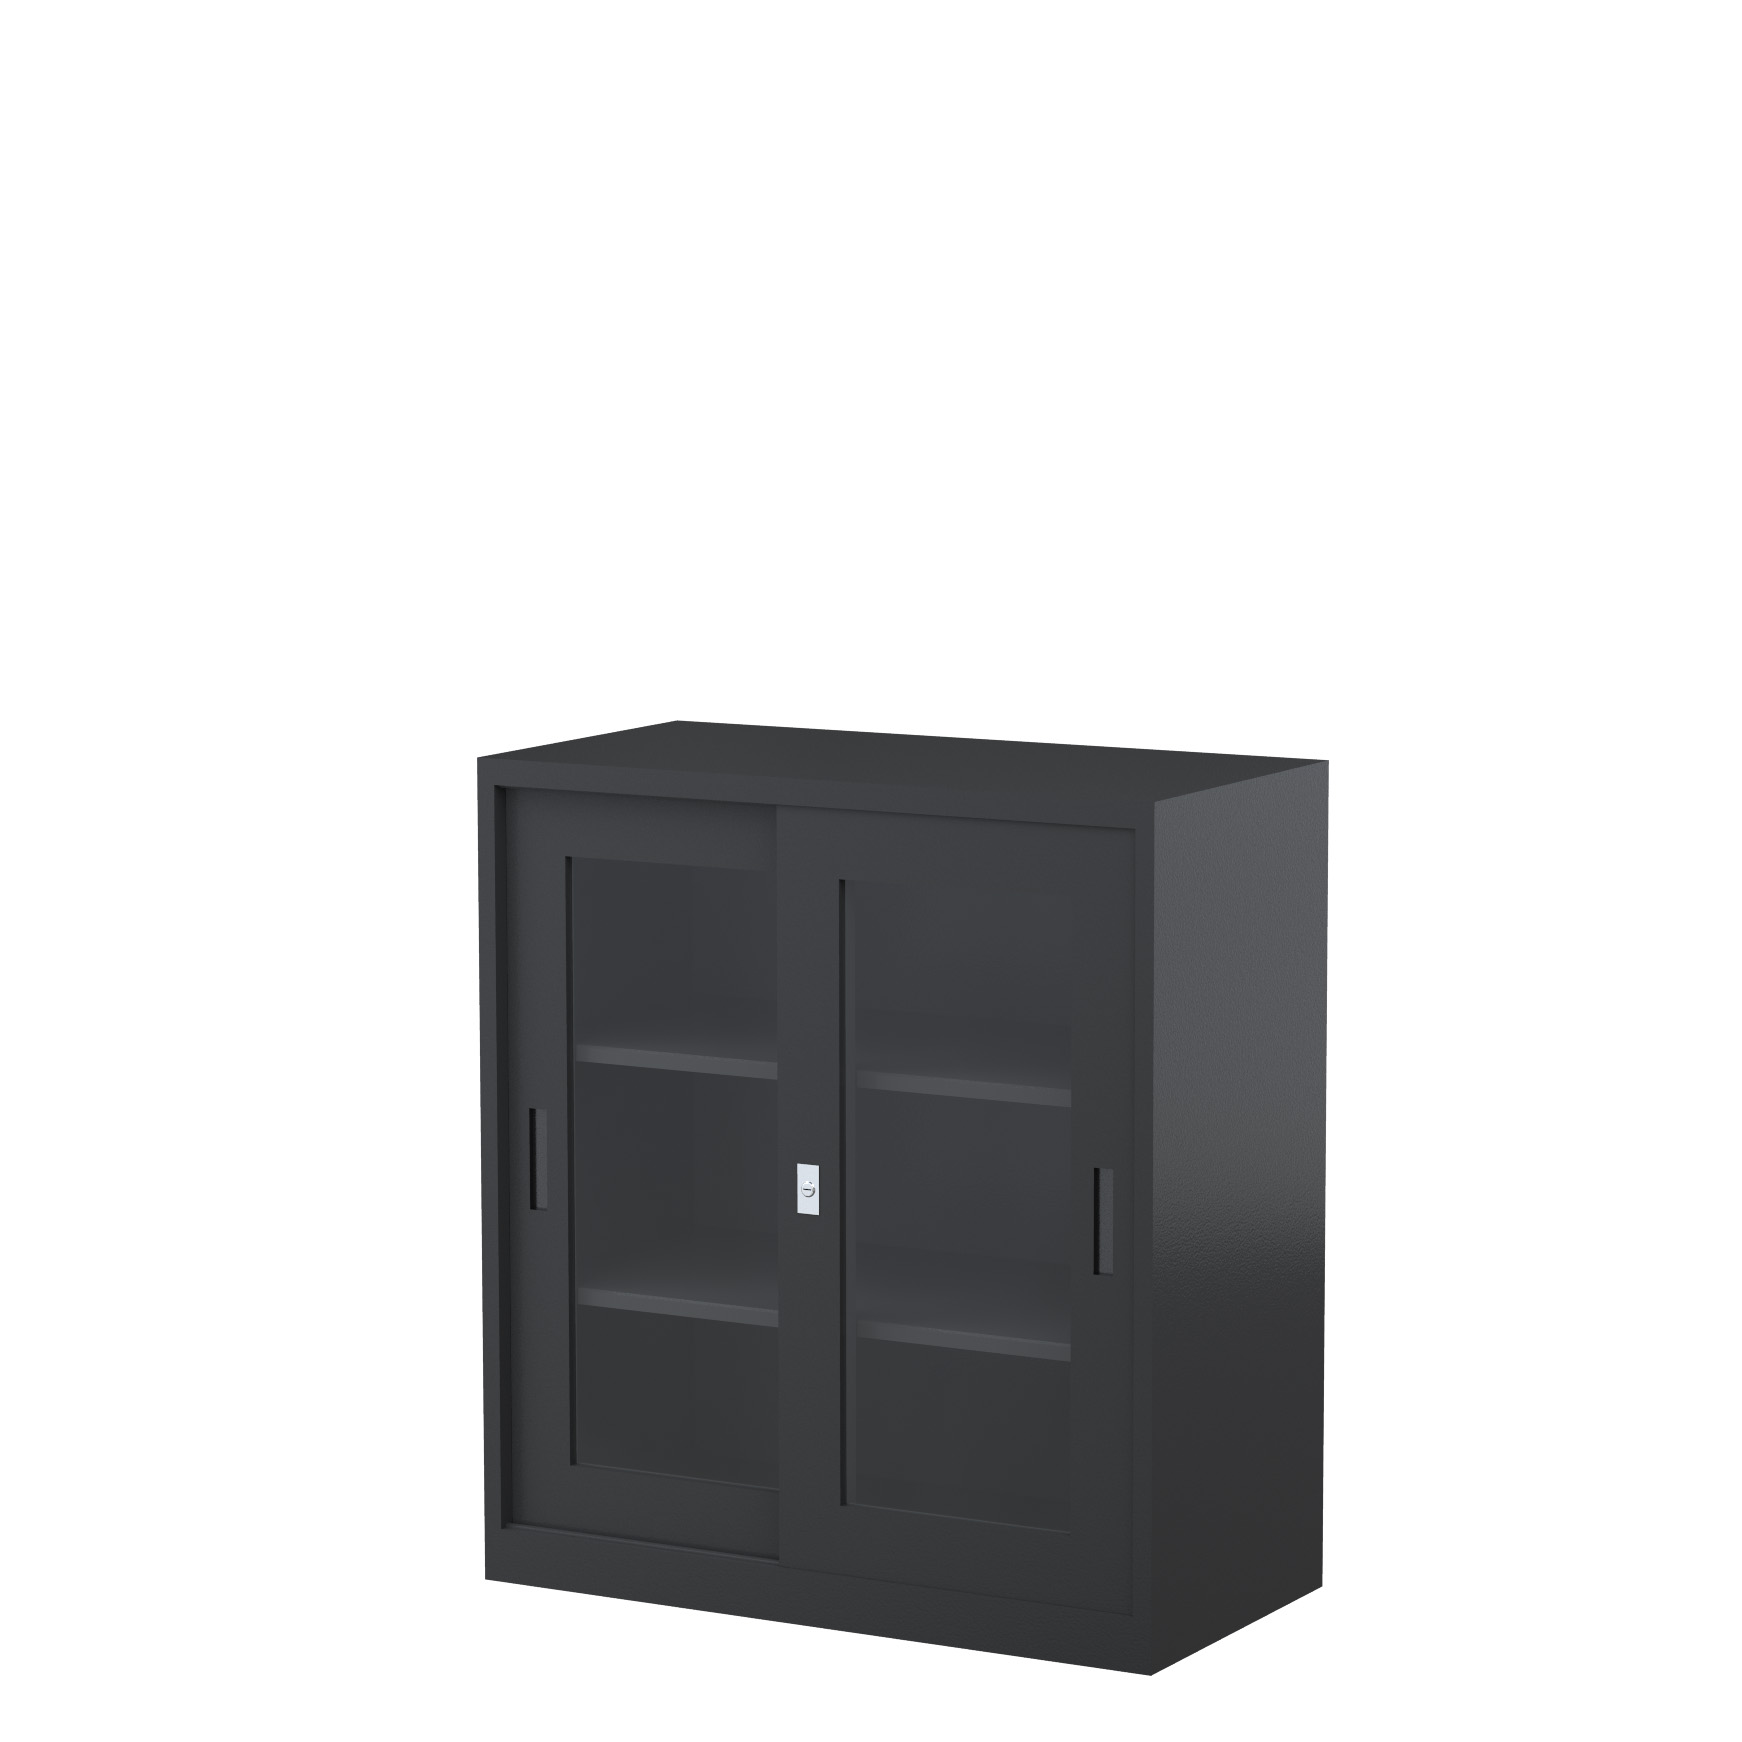 GD1830_1500 - STEELCO SG Cabinet 1830H x 1500W x 465D - 3 Shelves-GR2.jpg